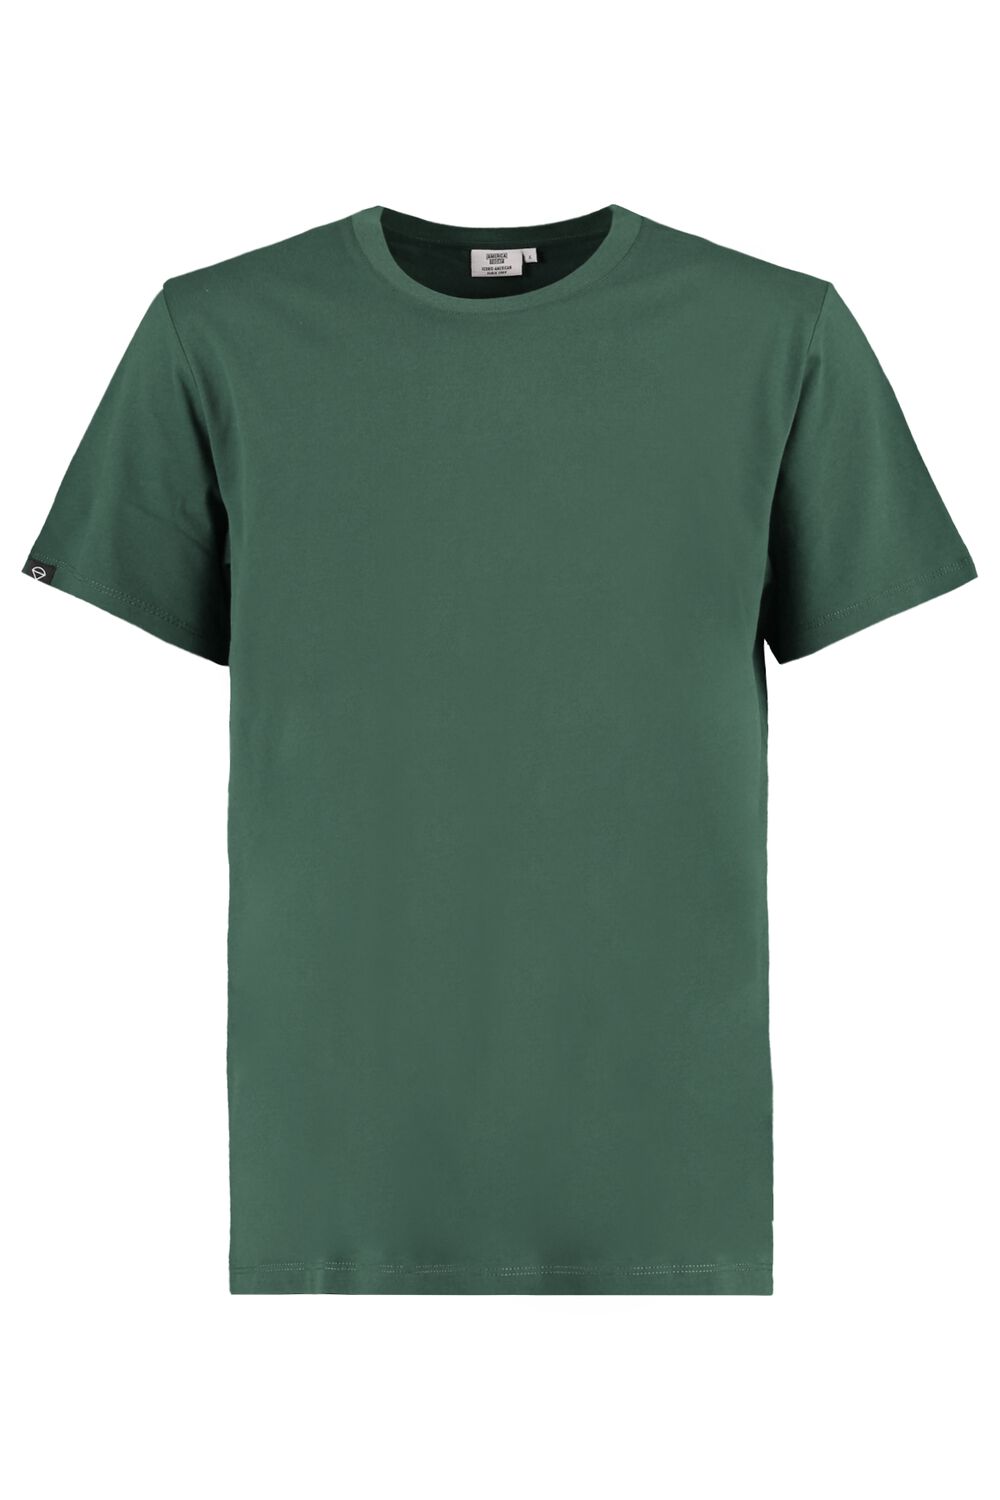 T shirt Groen